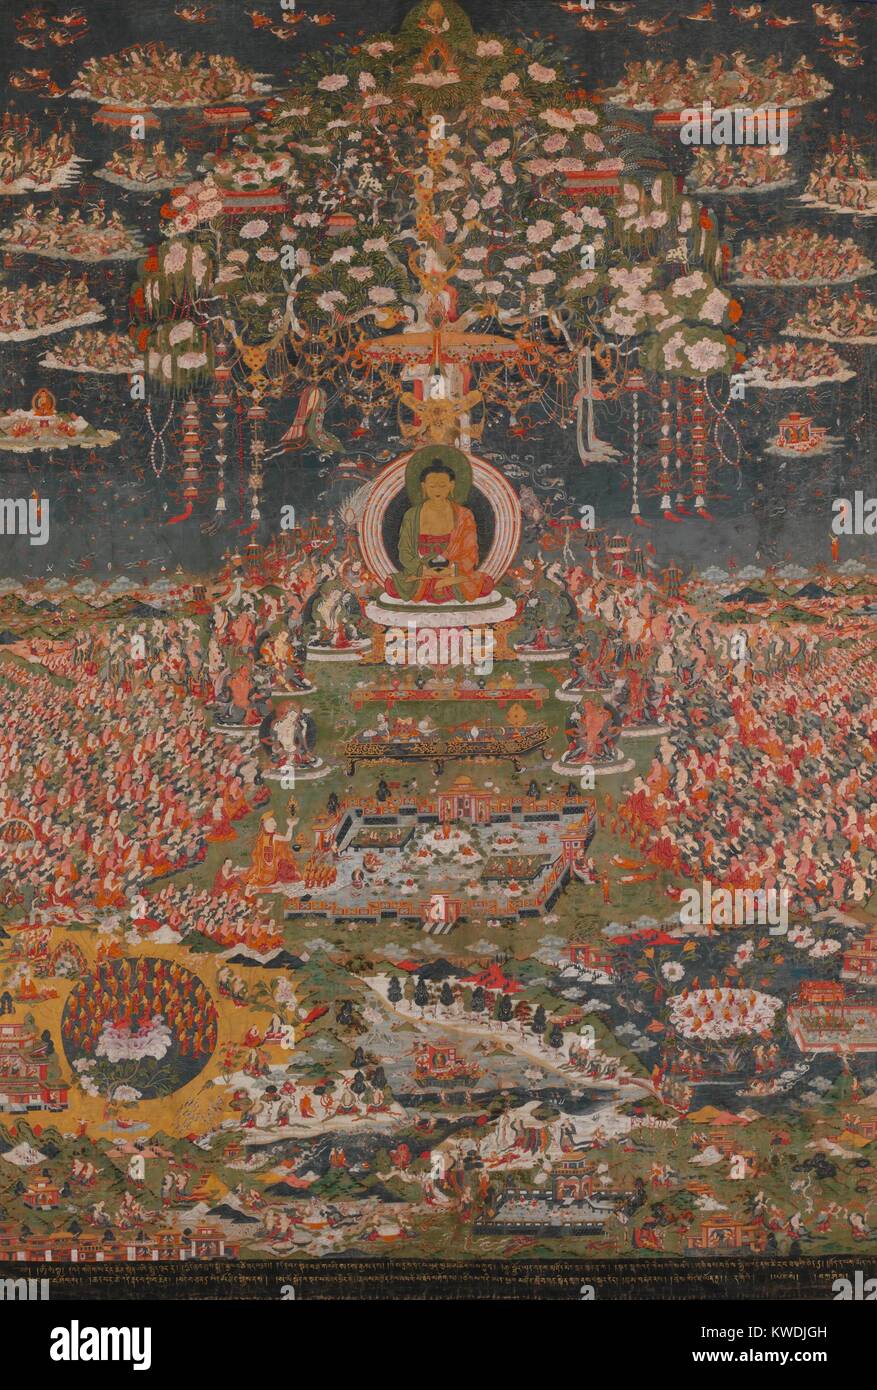 AMITABHA, il buddha della Western Pura Terra, Tibetani, buddista, xviii c., pittura. Amitayus, il Buddha della vita eterna, nel suo paradiso, Sukhavati, il Western Pura Terra. Il cielo è riempito con semidei che spargono fiori. Appena al di sotto di Amitayus sono gli otto grandi bodhisattvas. In fondo il paesaggio sono le piscine da cui il purificato sono rinati (BSLOC_2017_16_13) Foto Stock